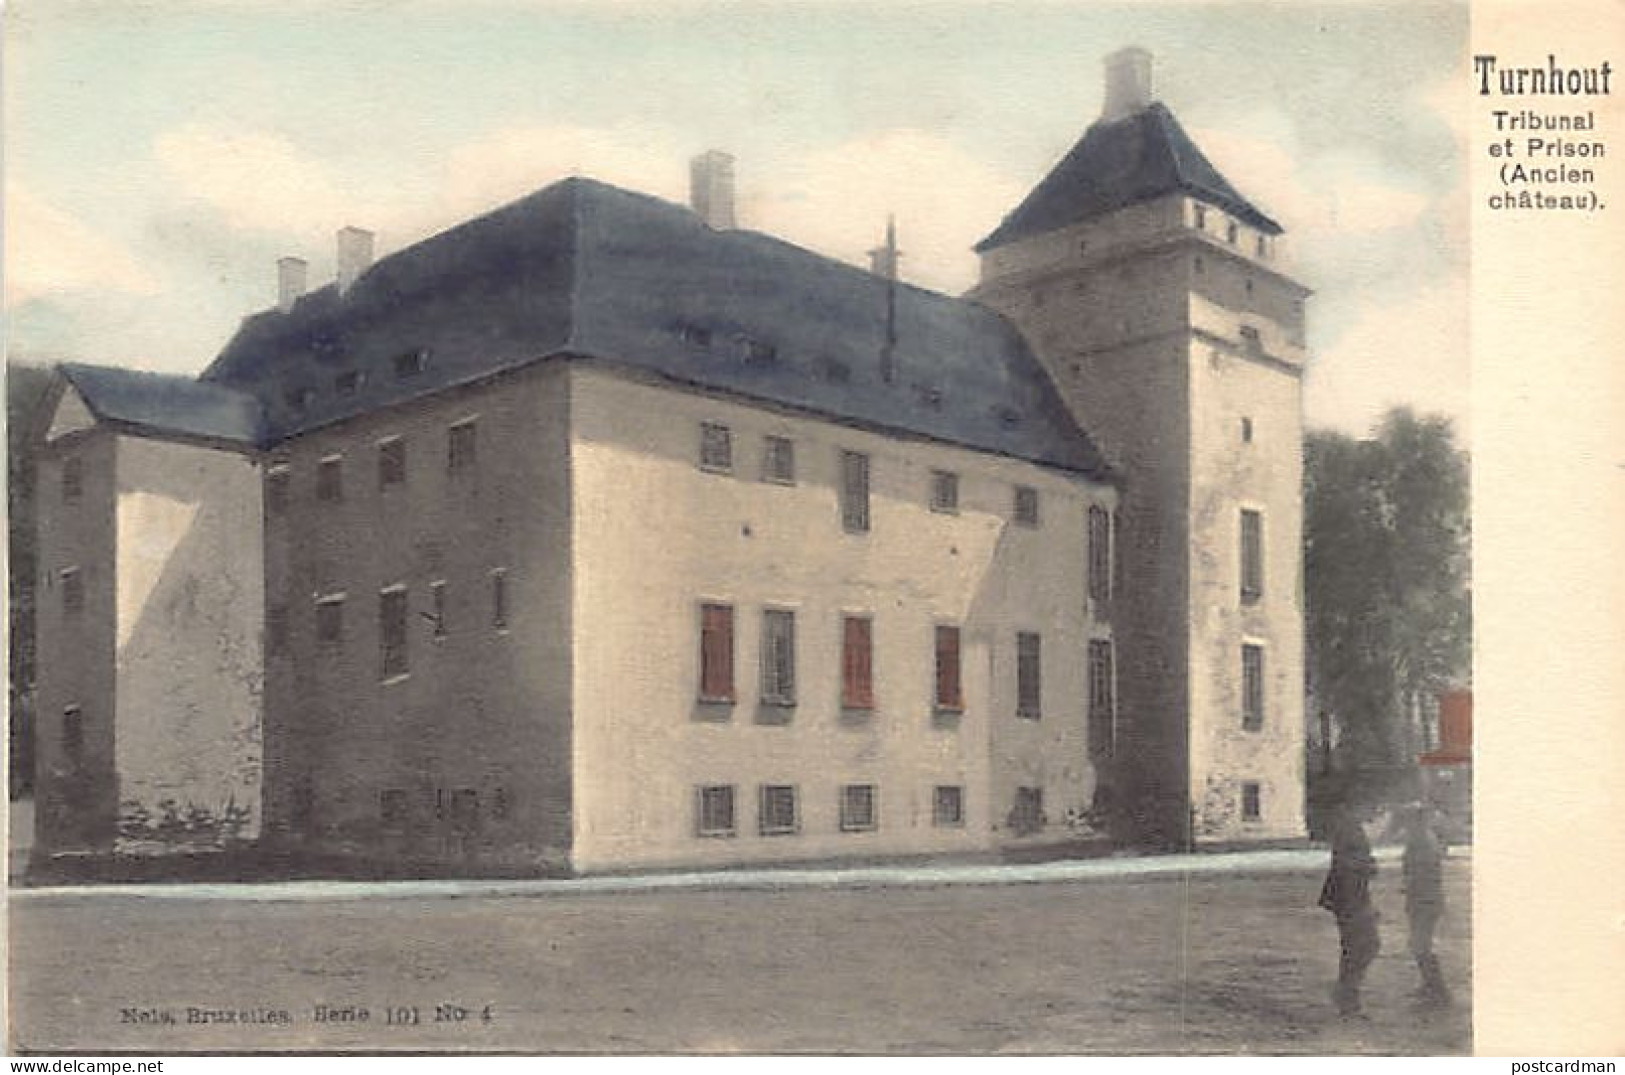 TURNHOUT (Ant.) Tribunal Et Prison - Rechtbank En Gevangenis - Nels Série 101 No. 4 - Turnhout